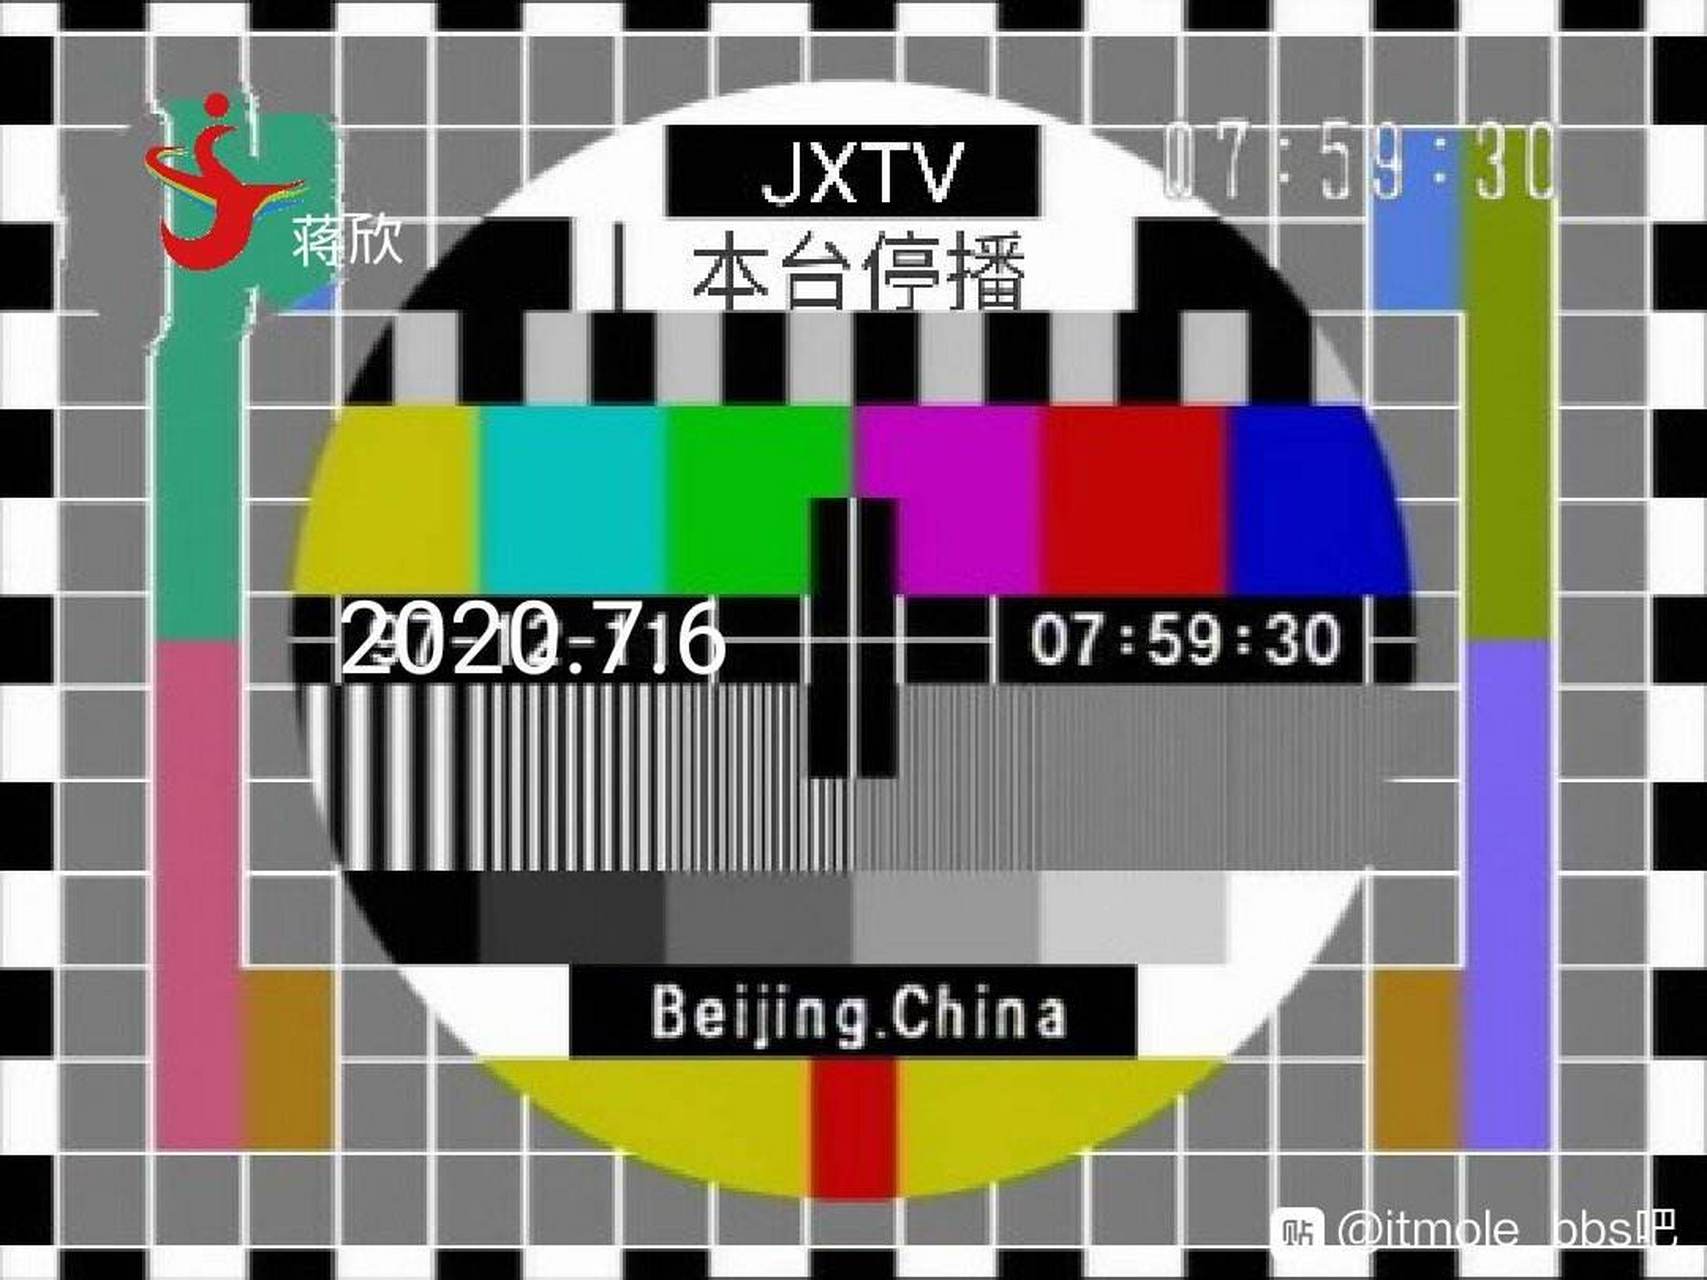 蒋欣卫视停播原因: 1,台标抄袭新疆卫视旧台标 2,一天24小时没有节目